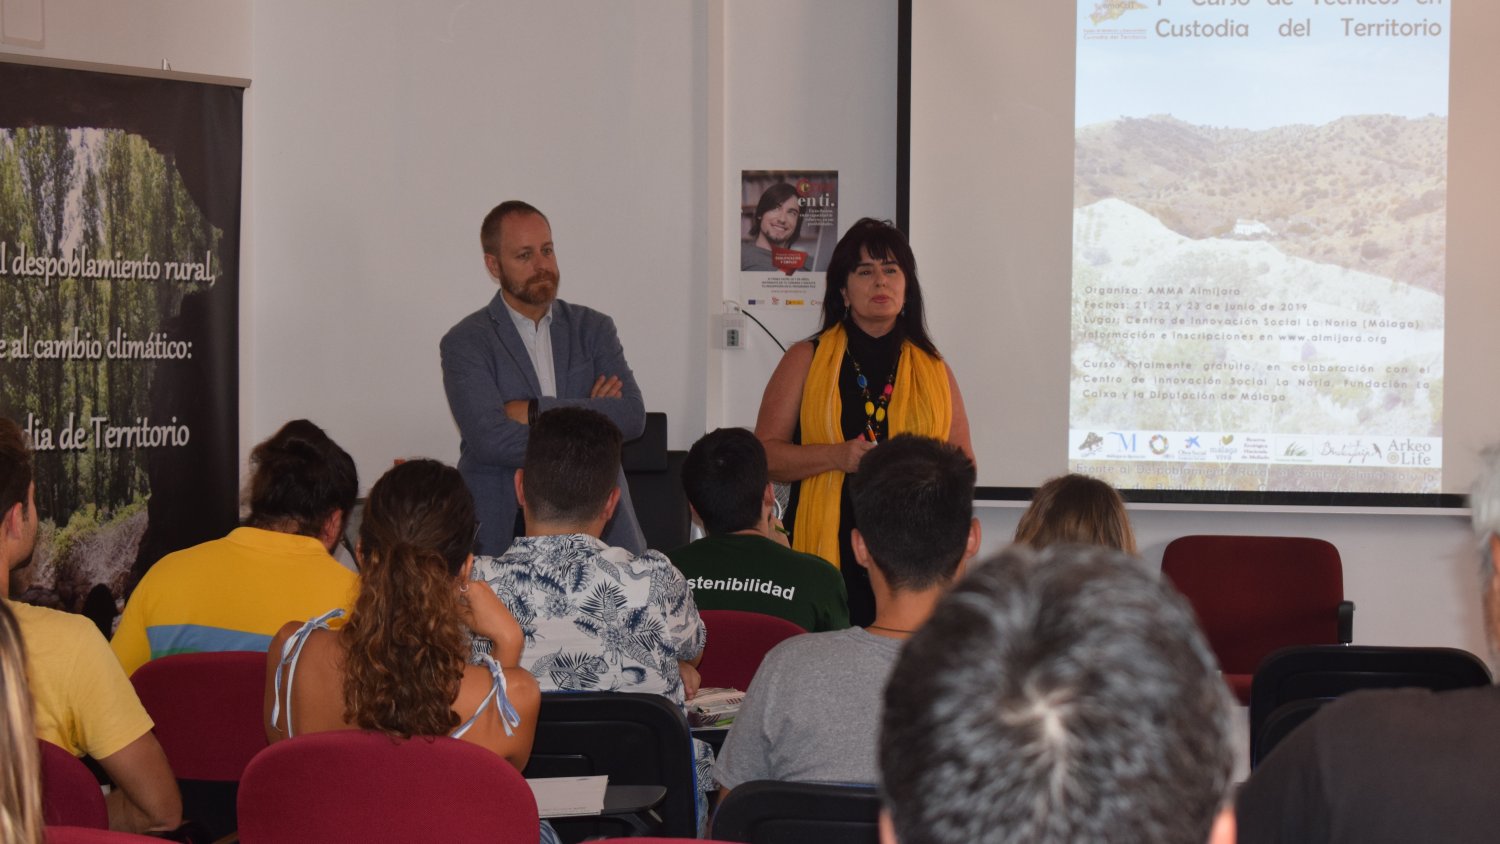 La Noria y la Asociación Almijara ofrecen un curso de técnicos en custodia del territorio para hacer frente al despoblamiento rural y al cambio climático